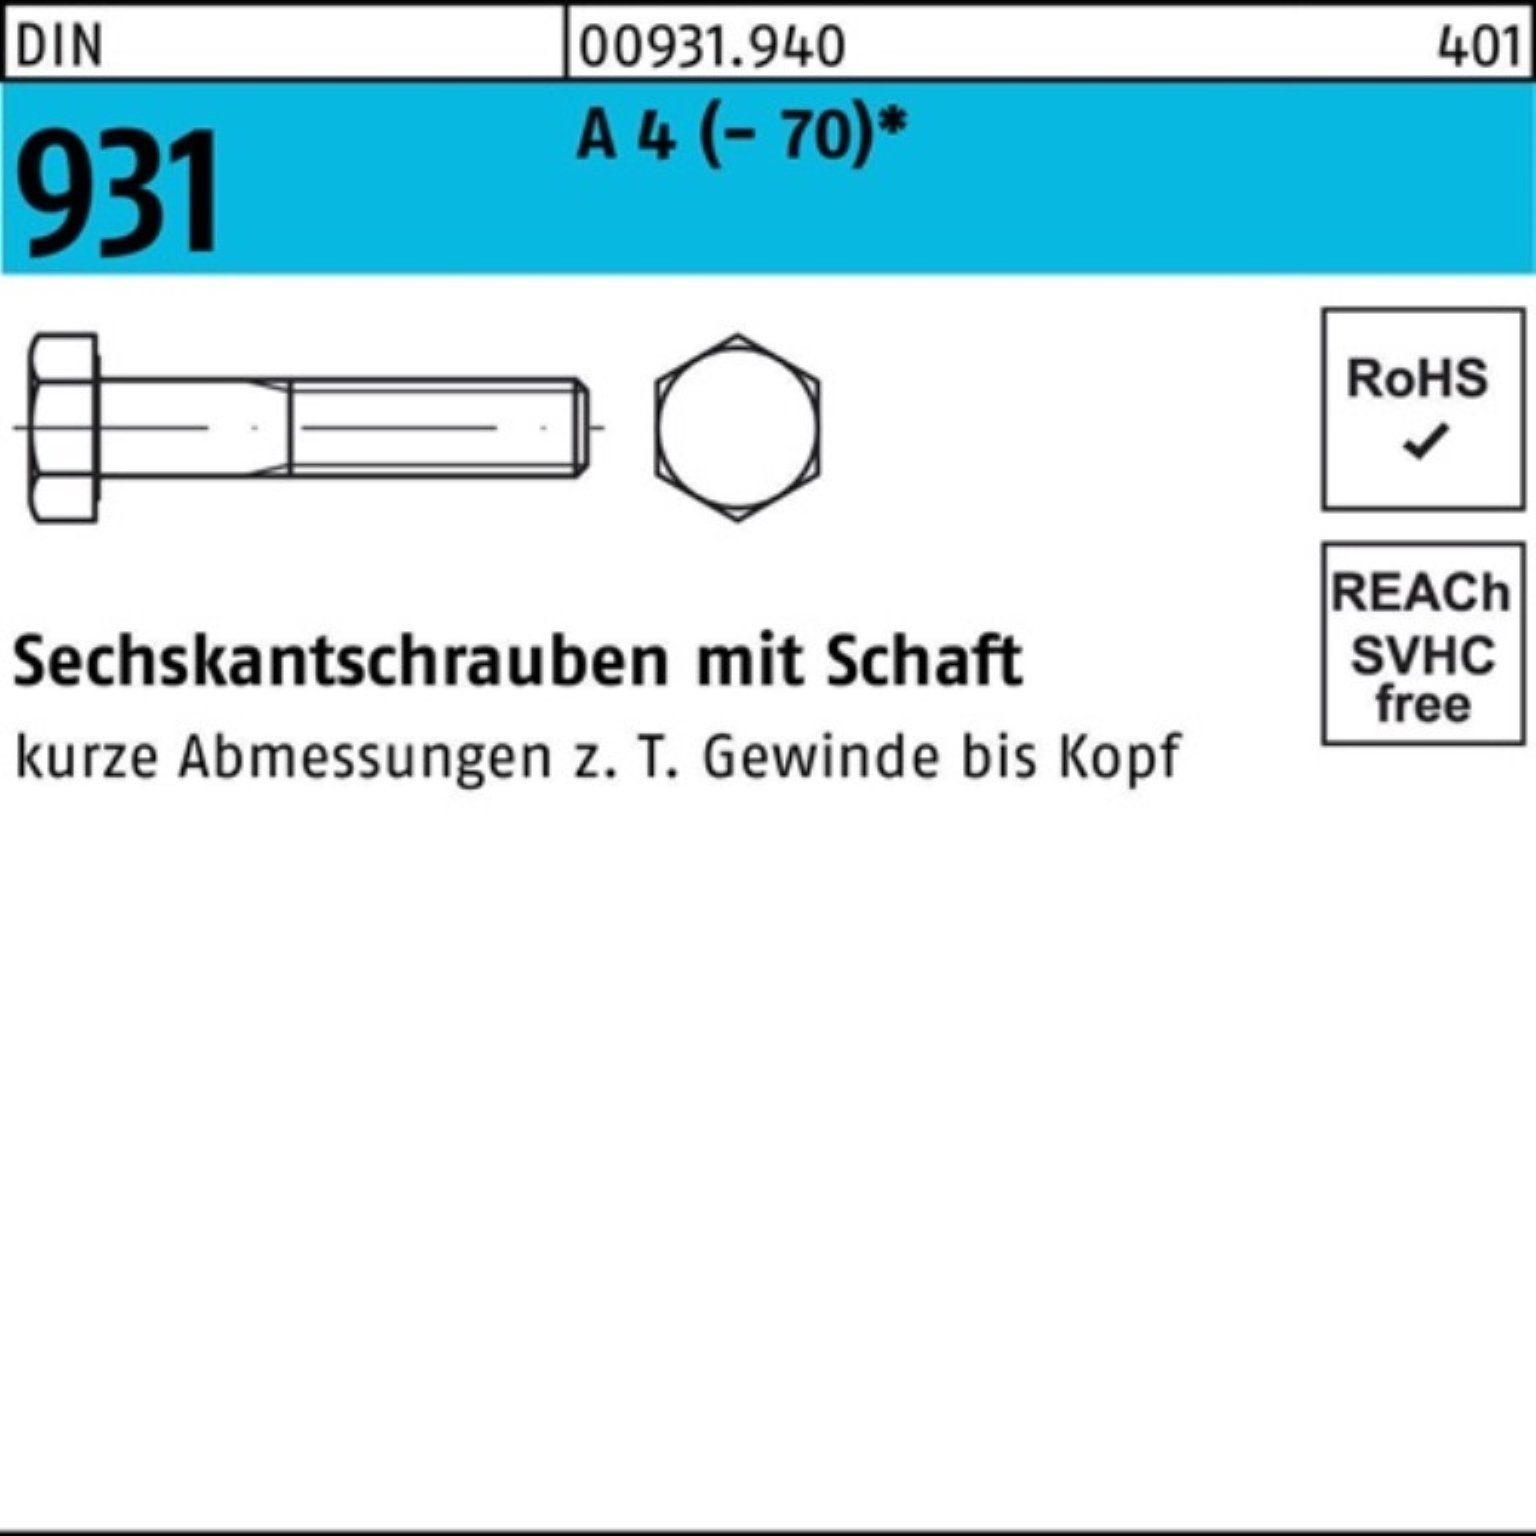 190 Stü Sechskantschraube 4 A Schaft M18x Pack 100er 931 DIN Sechskantschraube Reyher (70) 1